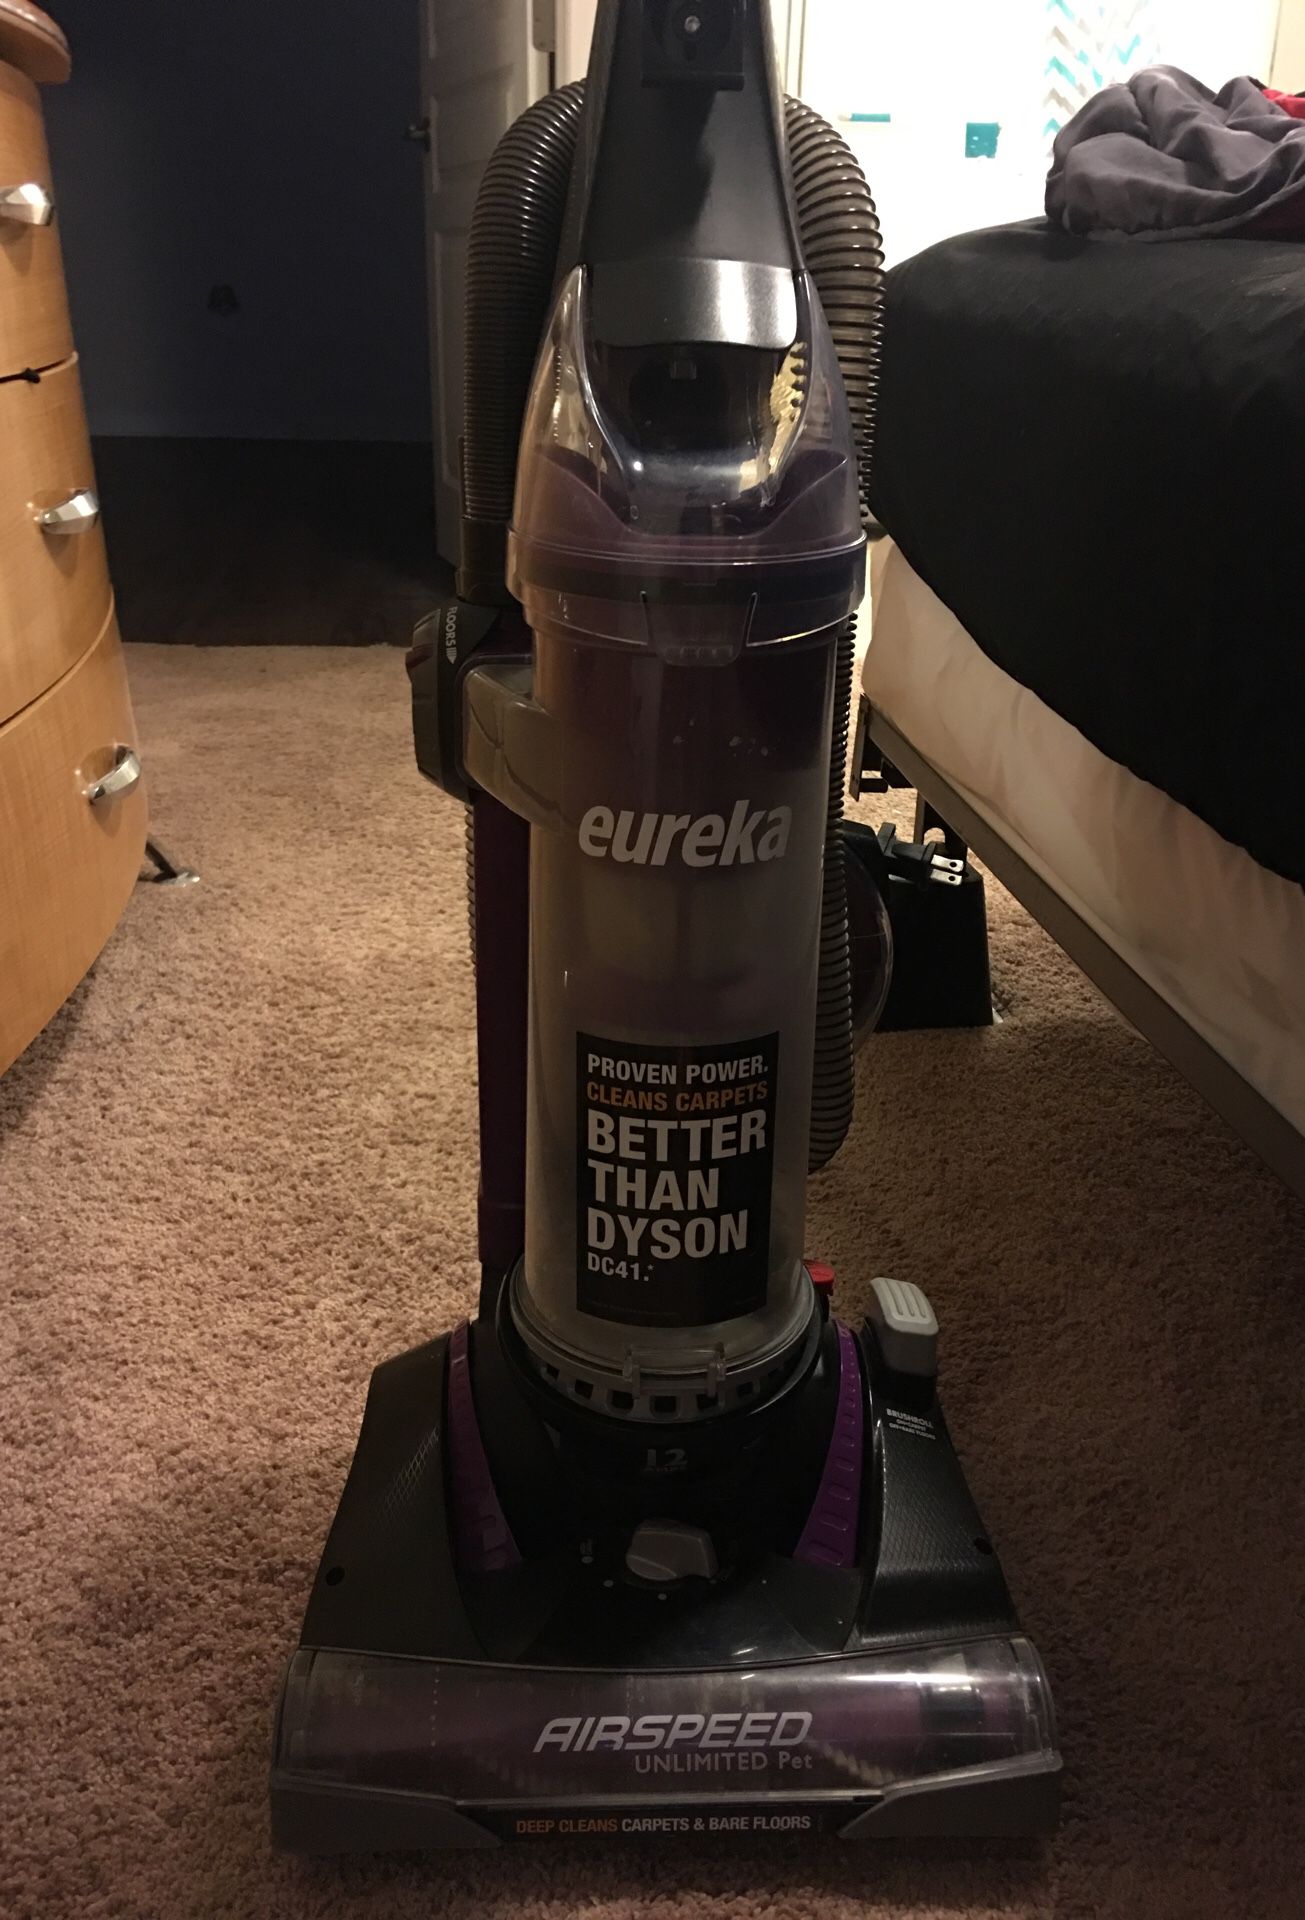 Eureka Vacuum Model # AS3033a